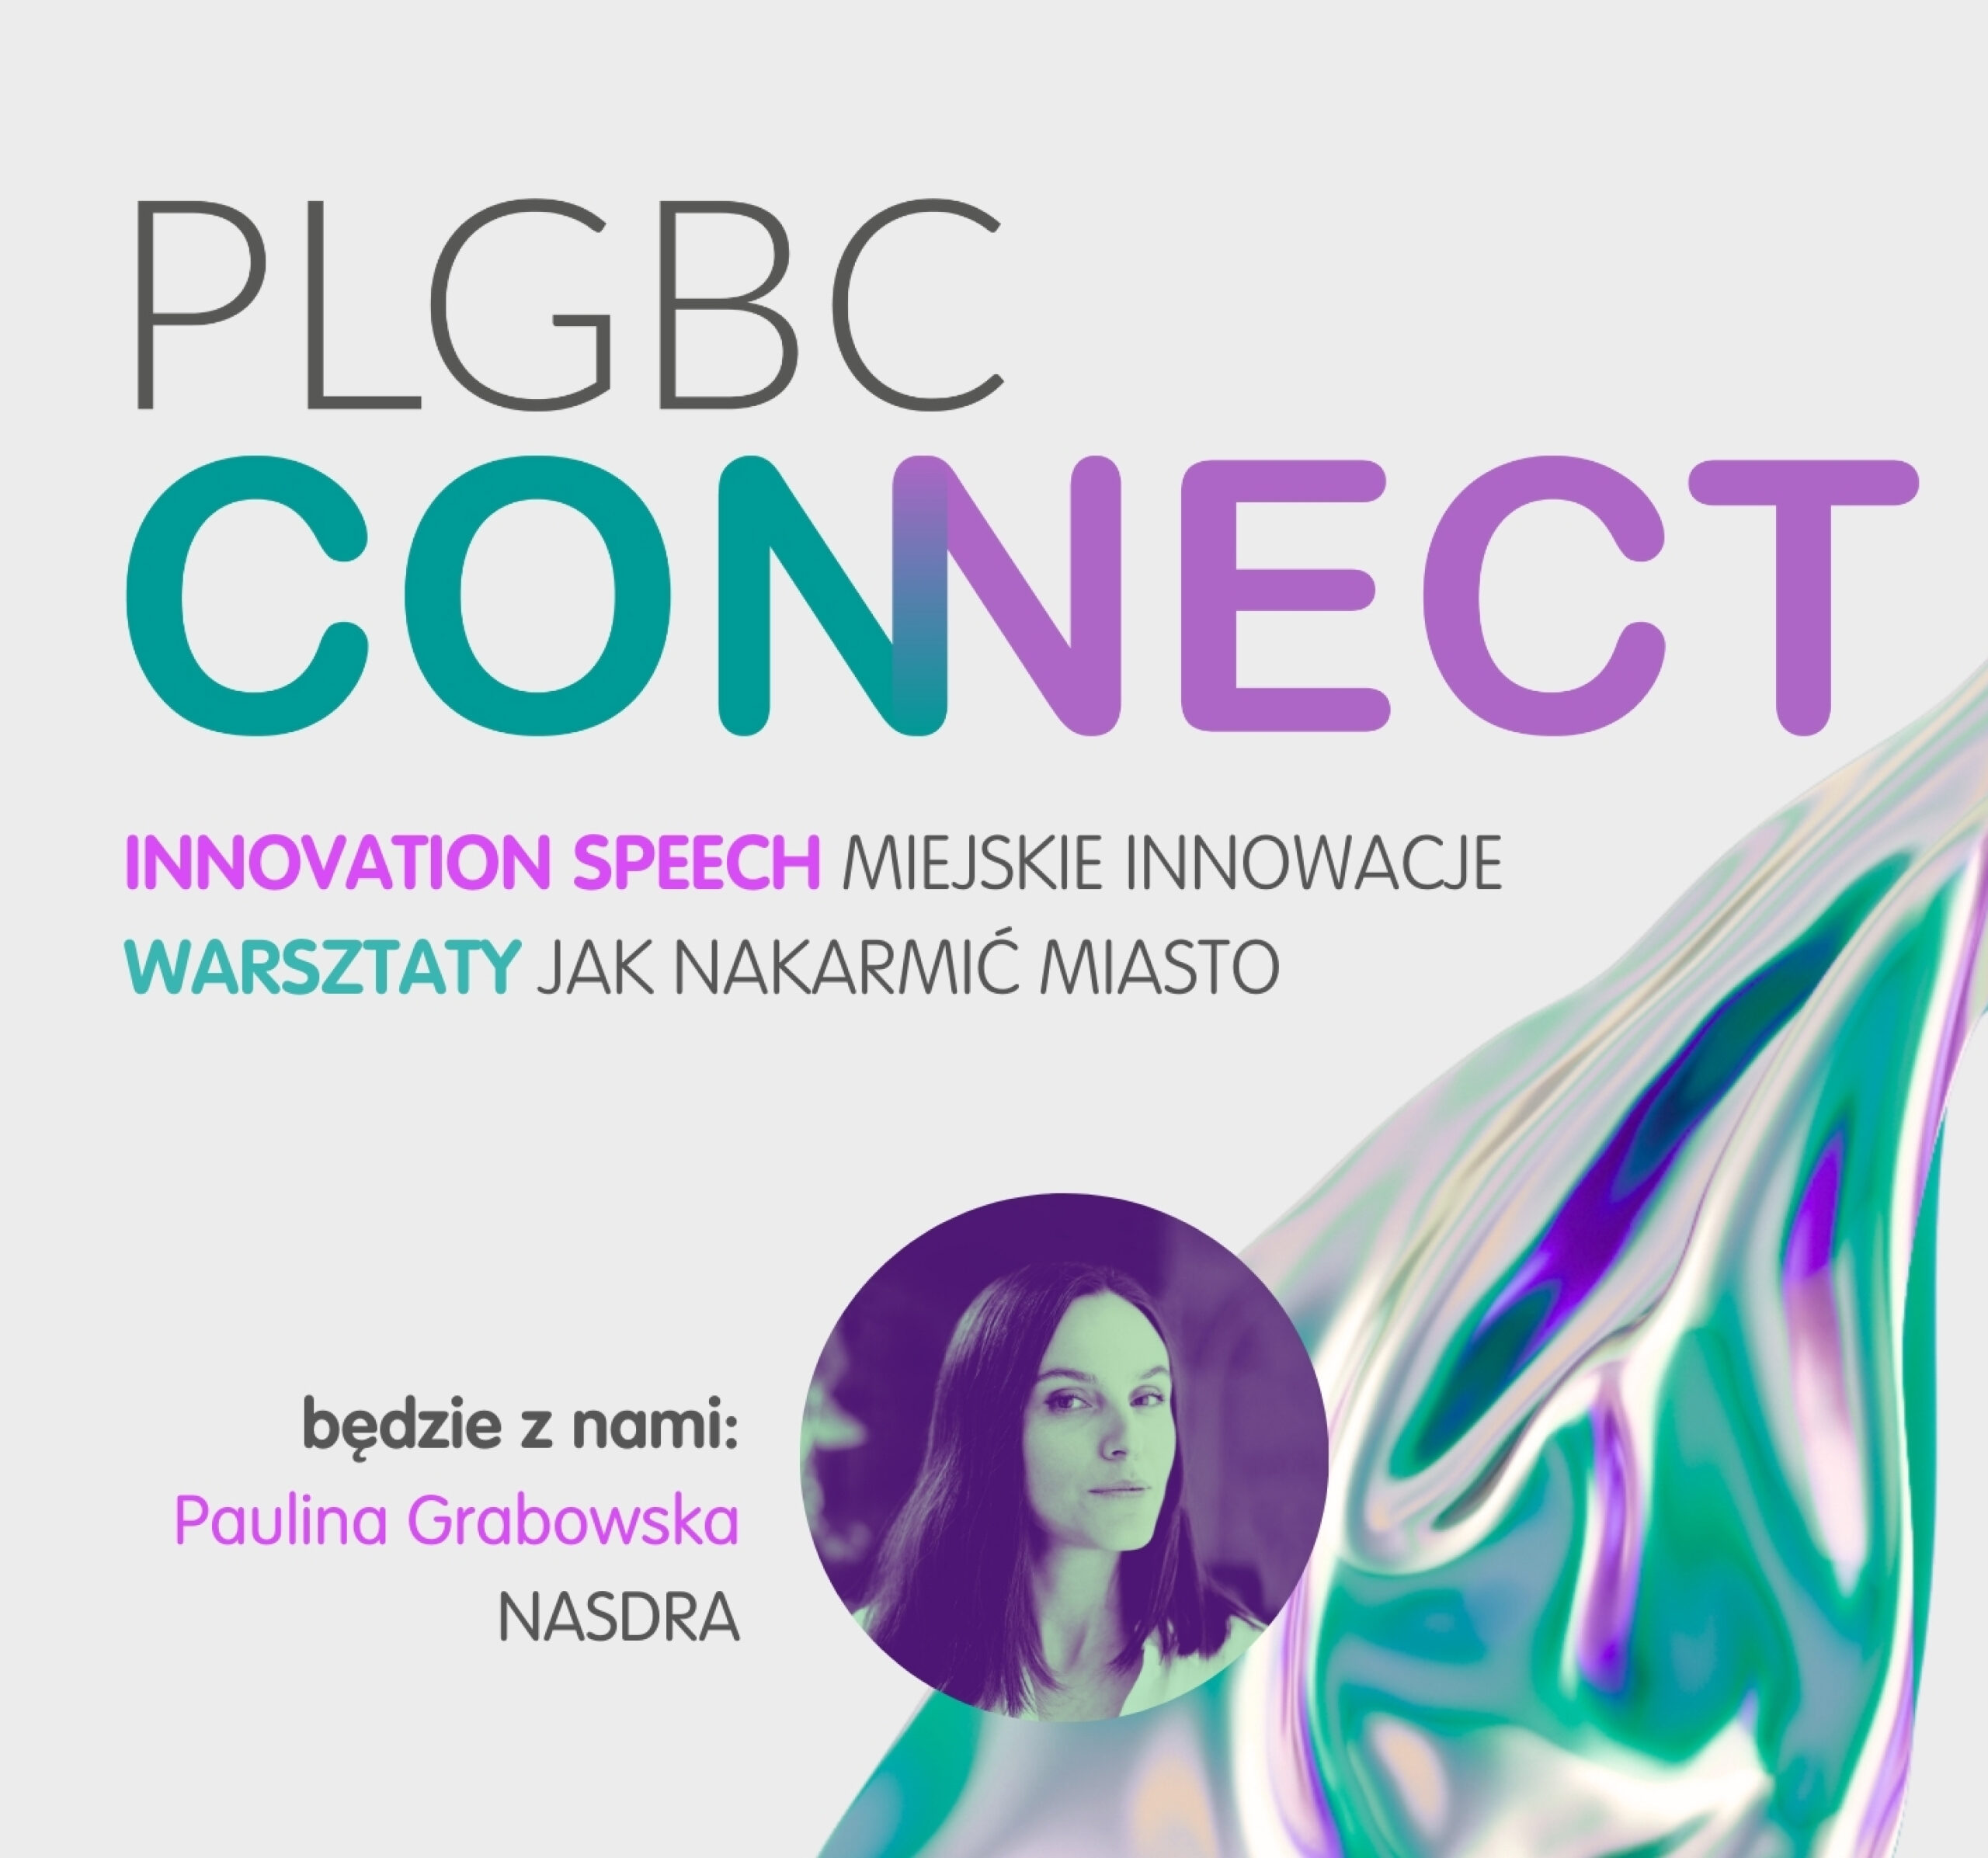 PLGBC CONNECT: Miejskie innowacje z Pauliną Grabowską